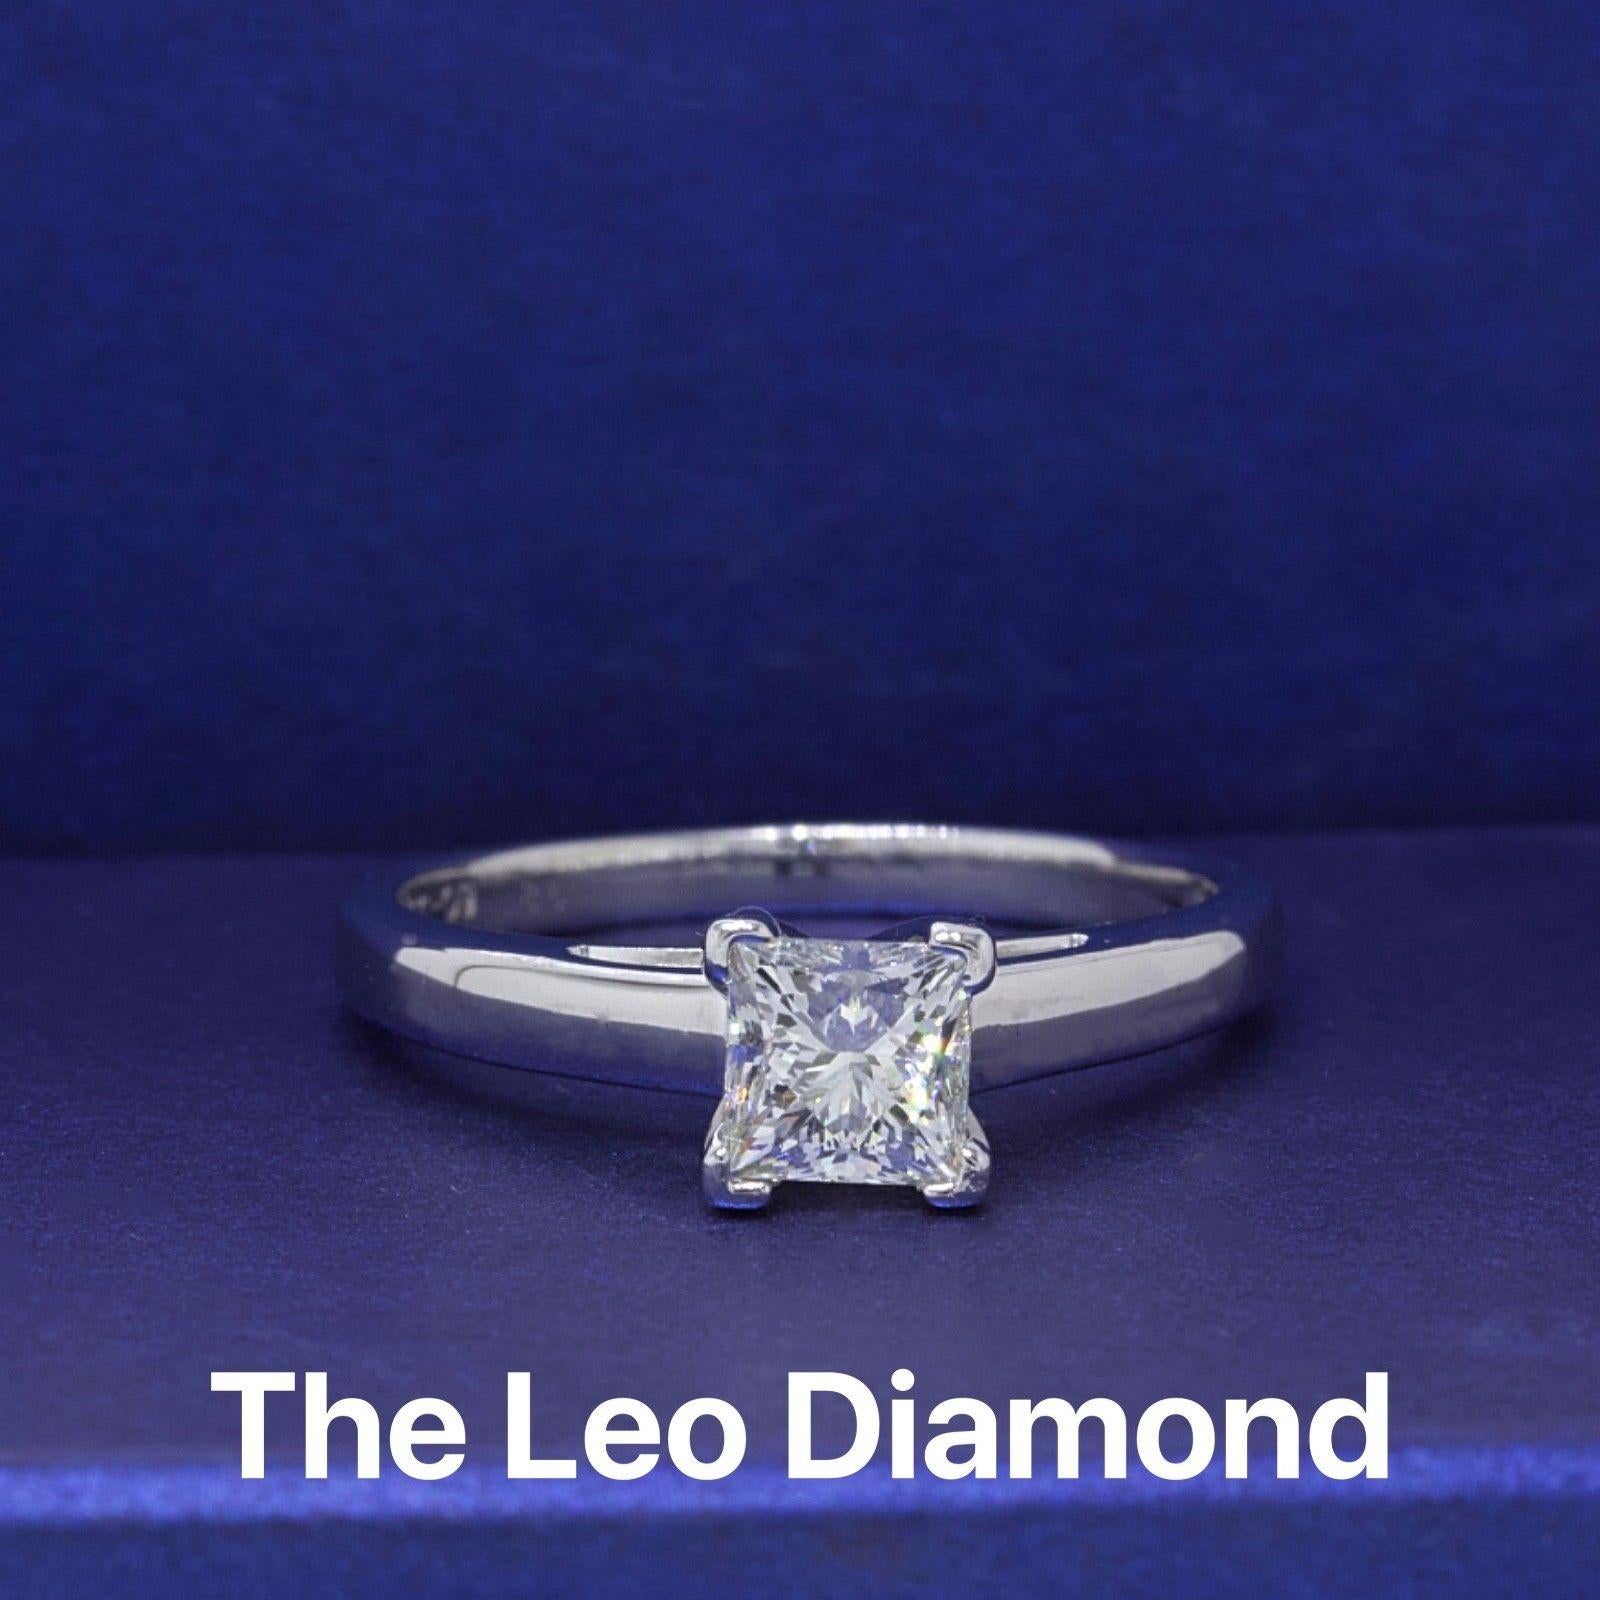 LEO DIAMOND
Stil: 4 Zacken Solitär
Seriennummer: LEO 146322S
Jahr des Kaufs: 2011
Metall: 14 KT Weißgold & Platin 950
Größe:  7.5 - ansehnlich
Karat Gesamtgewicht:  0.83 CTS
Diamant-Form:  Carréschliff
Diamant Farbe & Reinheit: I / SI1
Kommentare: 